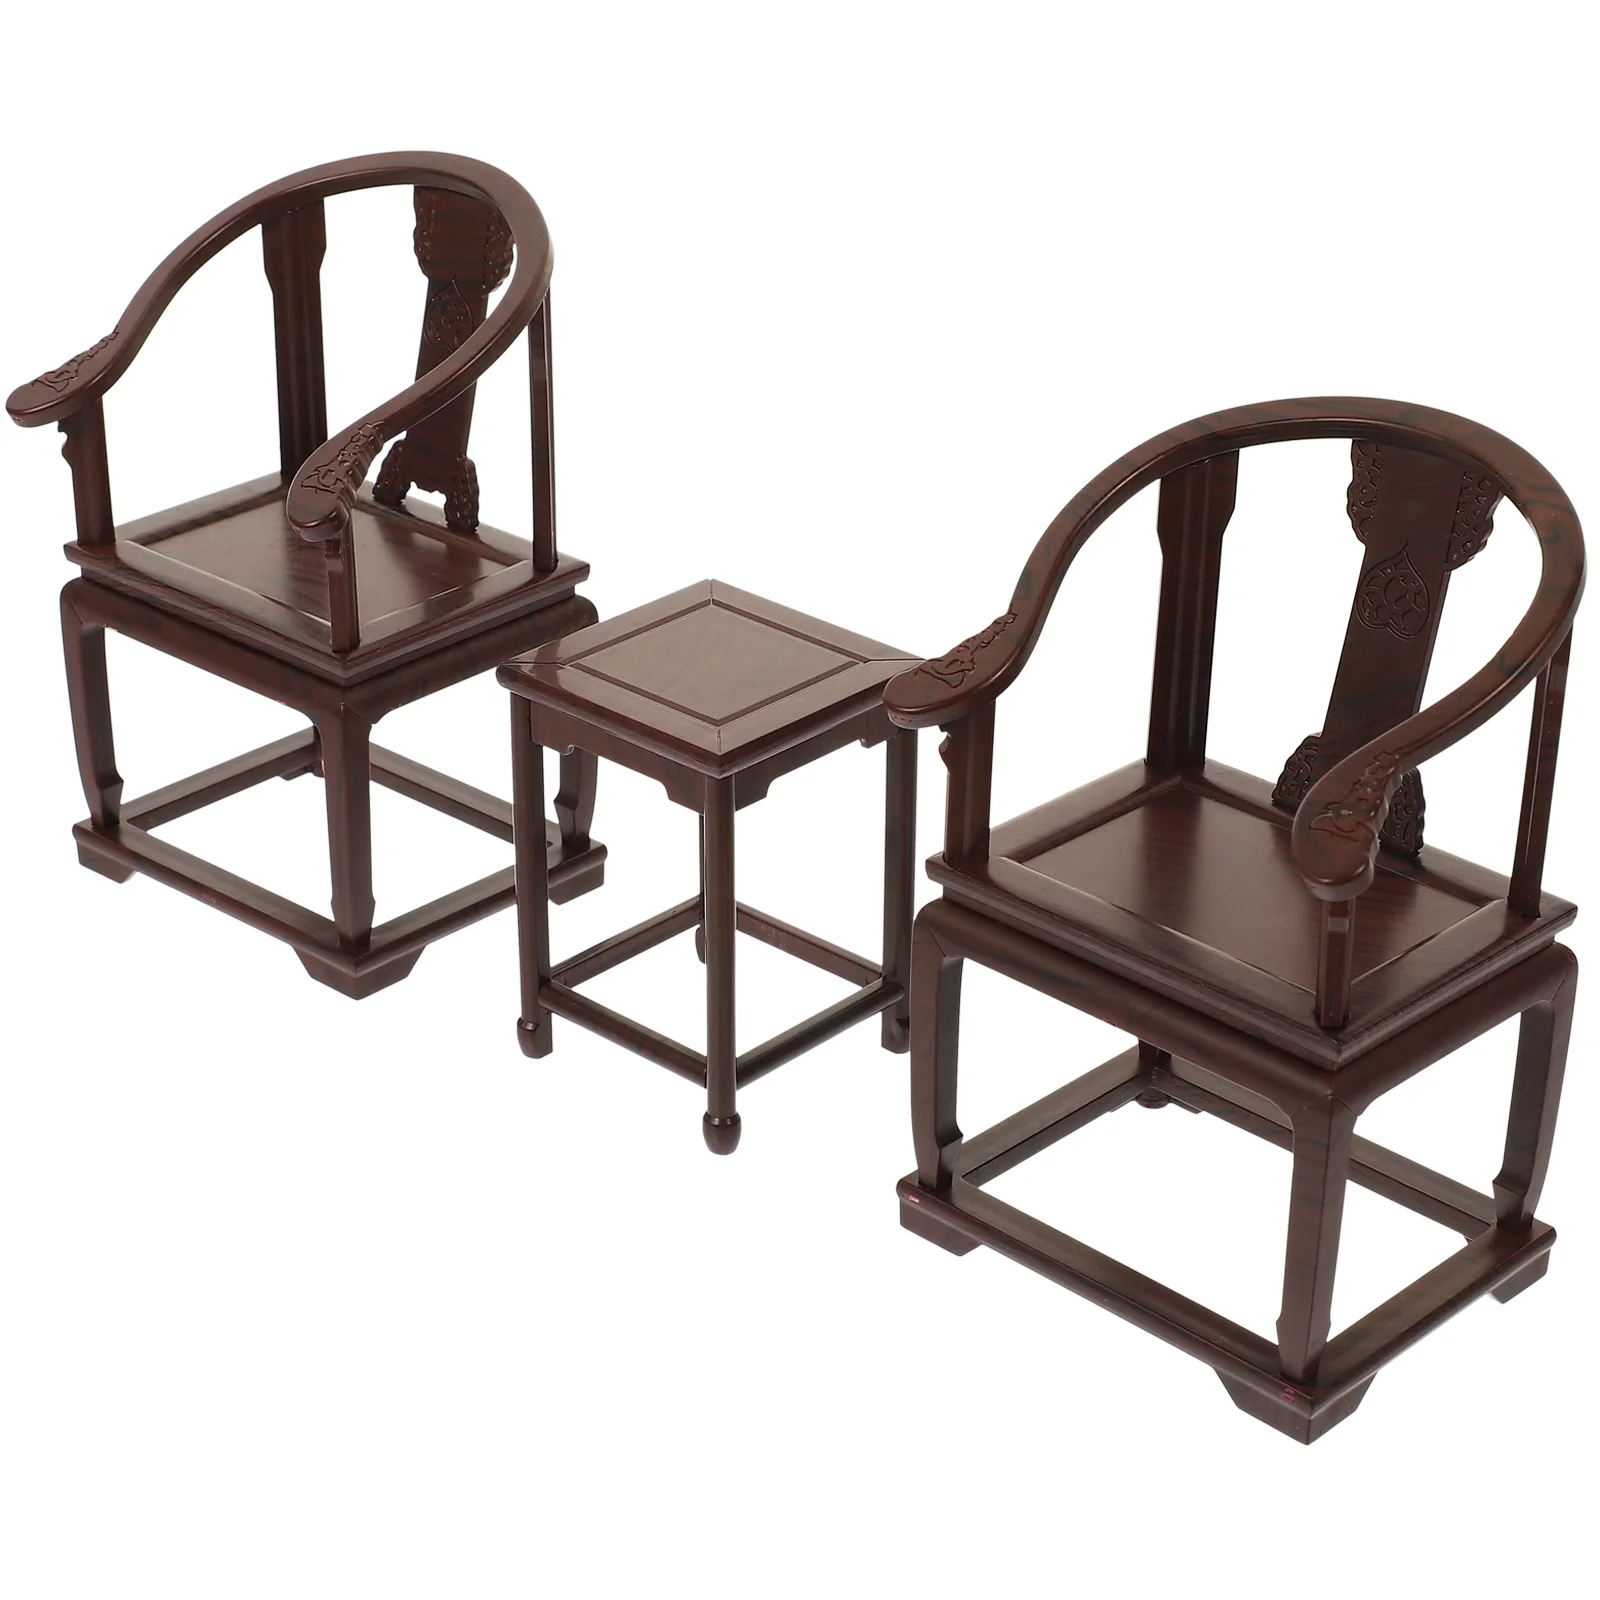 

Стул в сборе, миниатюрный пазл, деревянные детские винтажные кресла, пазлы, деревянные настольные стулья «сделай сам», офисная мебель 3D